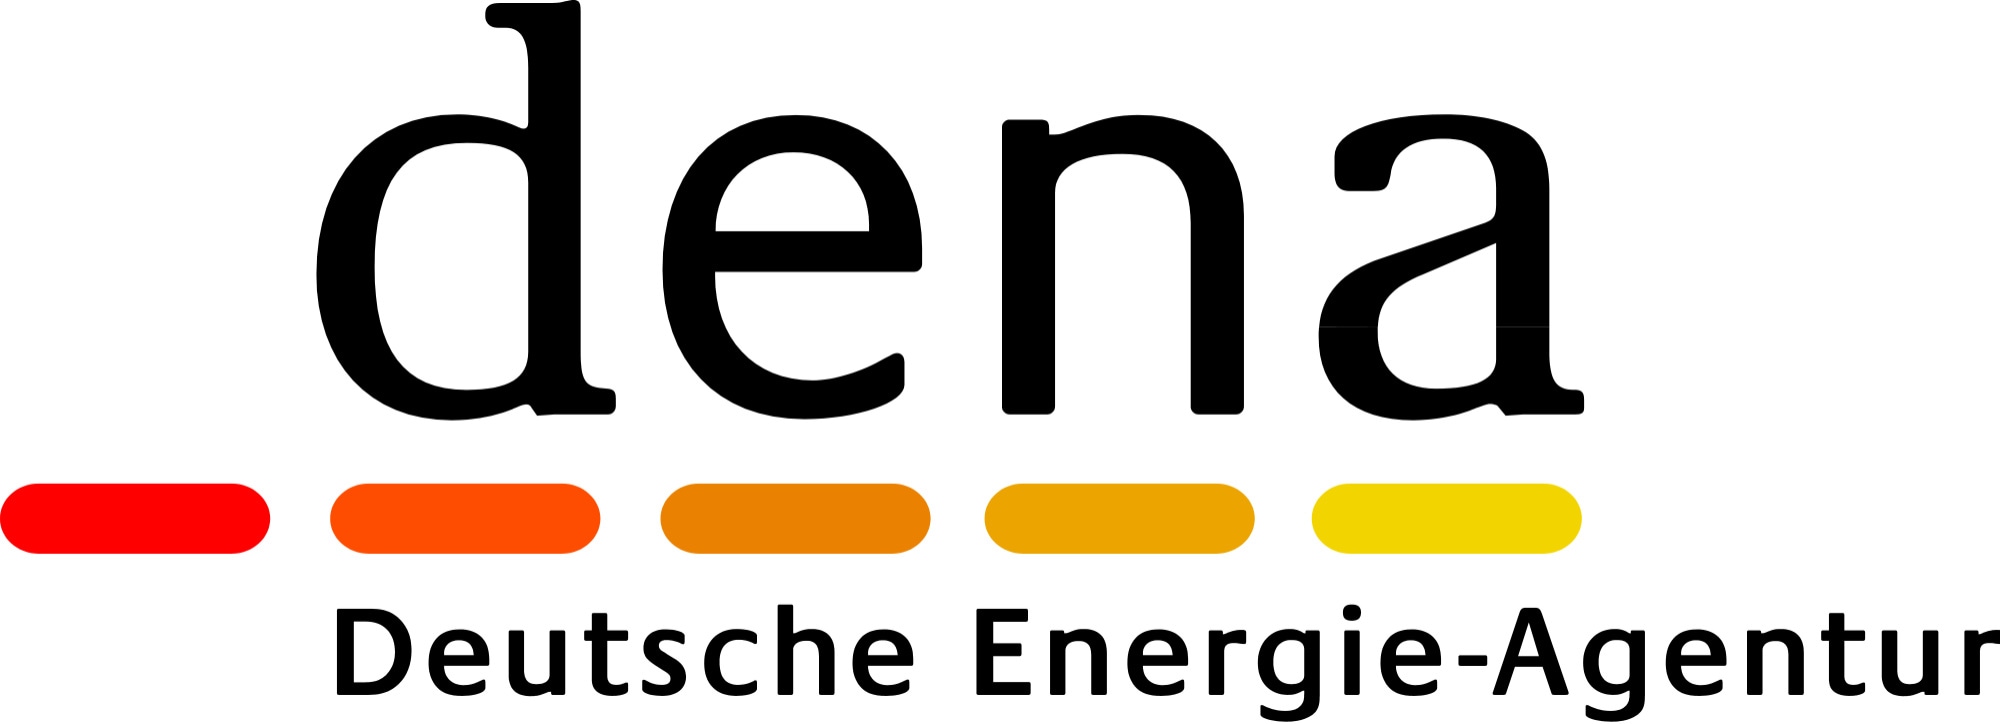 Deutsche Energie-Agentur GmbH (dena) / German Energy Agency